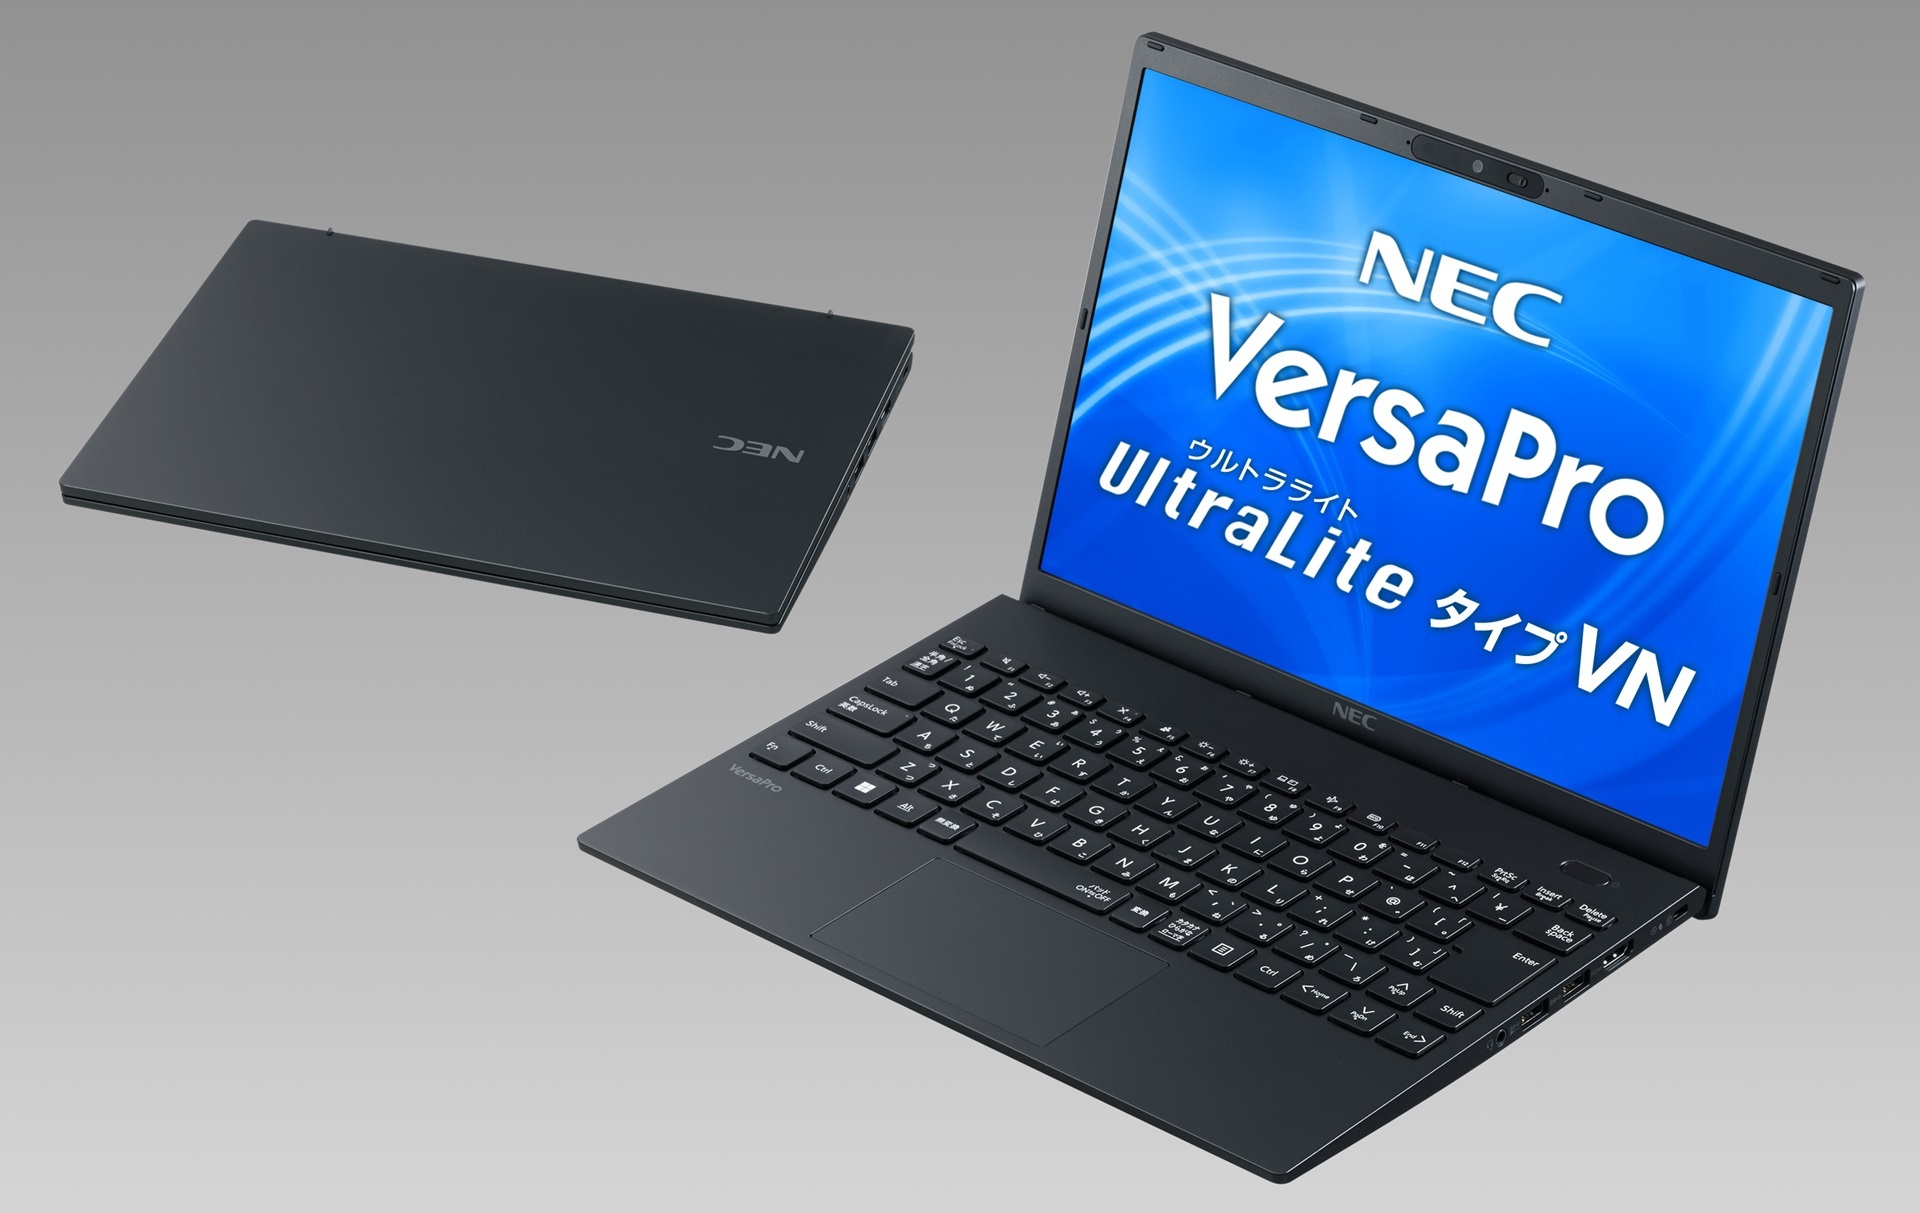 モバイルノートPC「VersaPro UltraLite タイプVN」。軽量1Kg未満を継承しつつ、狭額縁デザインの採用により、従来に比べ垂直方向に約11％表示領域が広い13.3型に